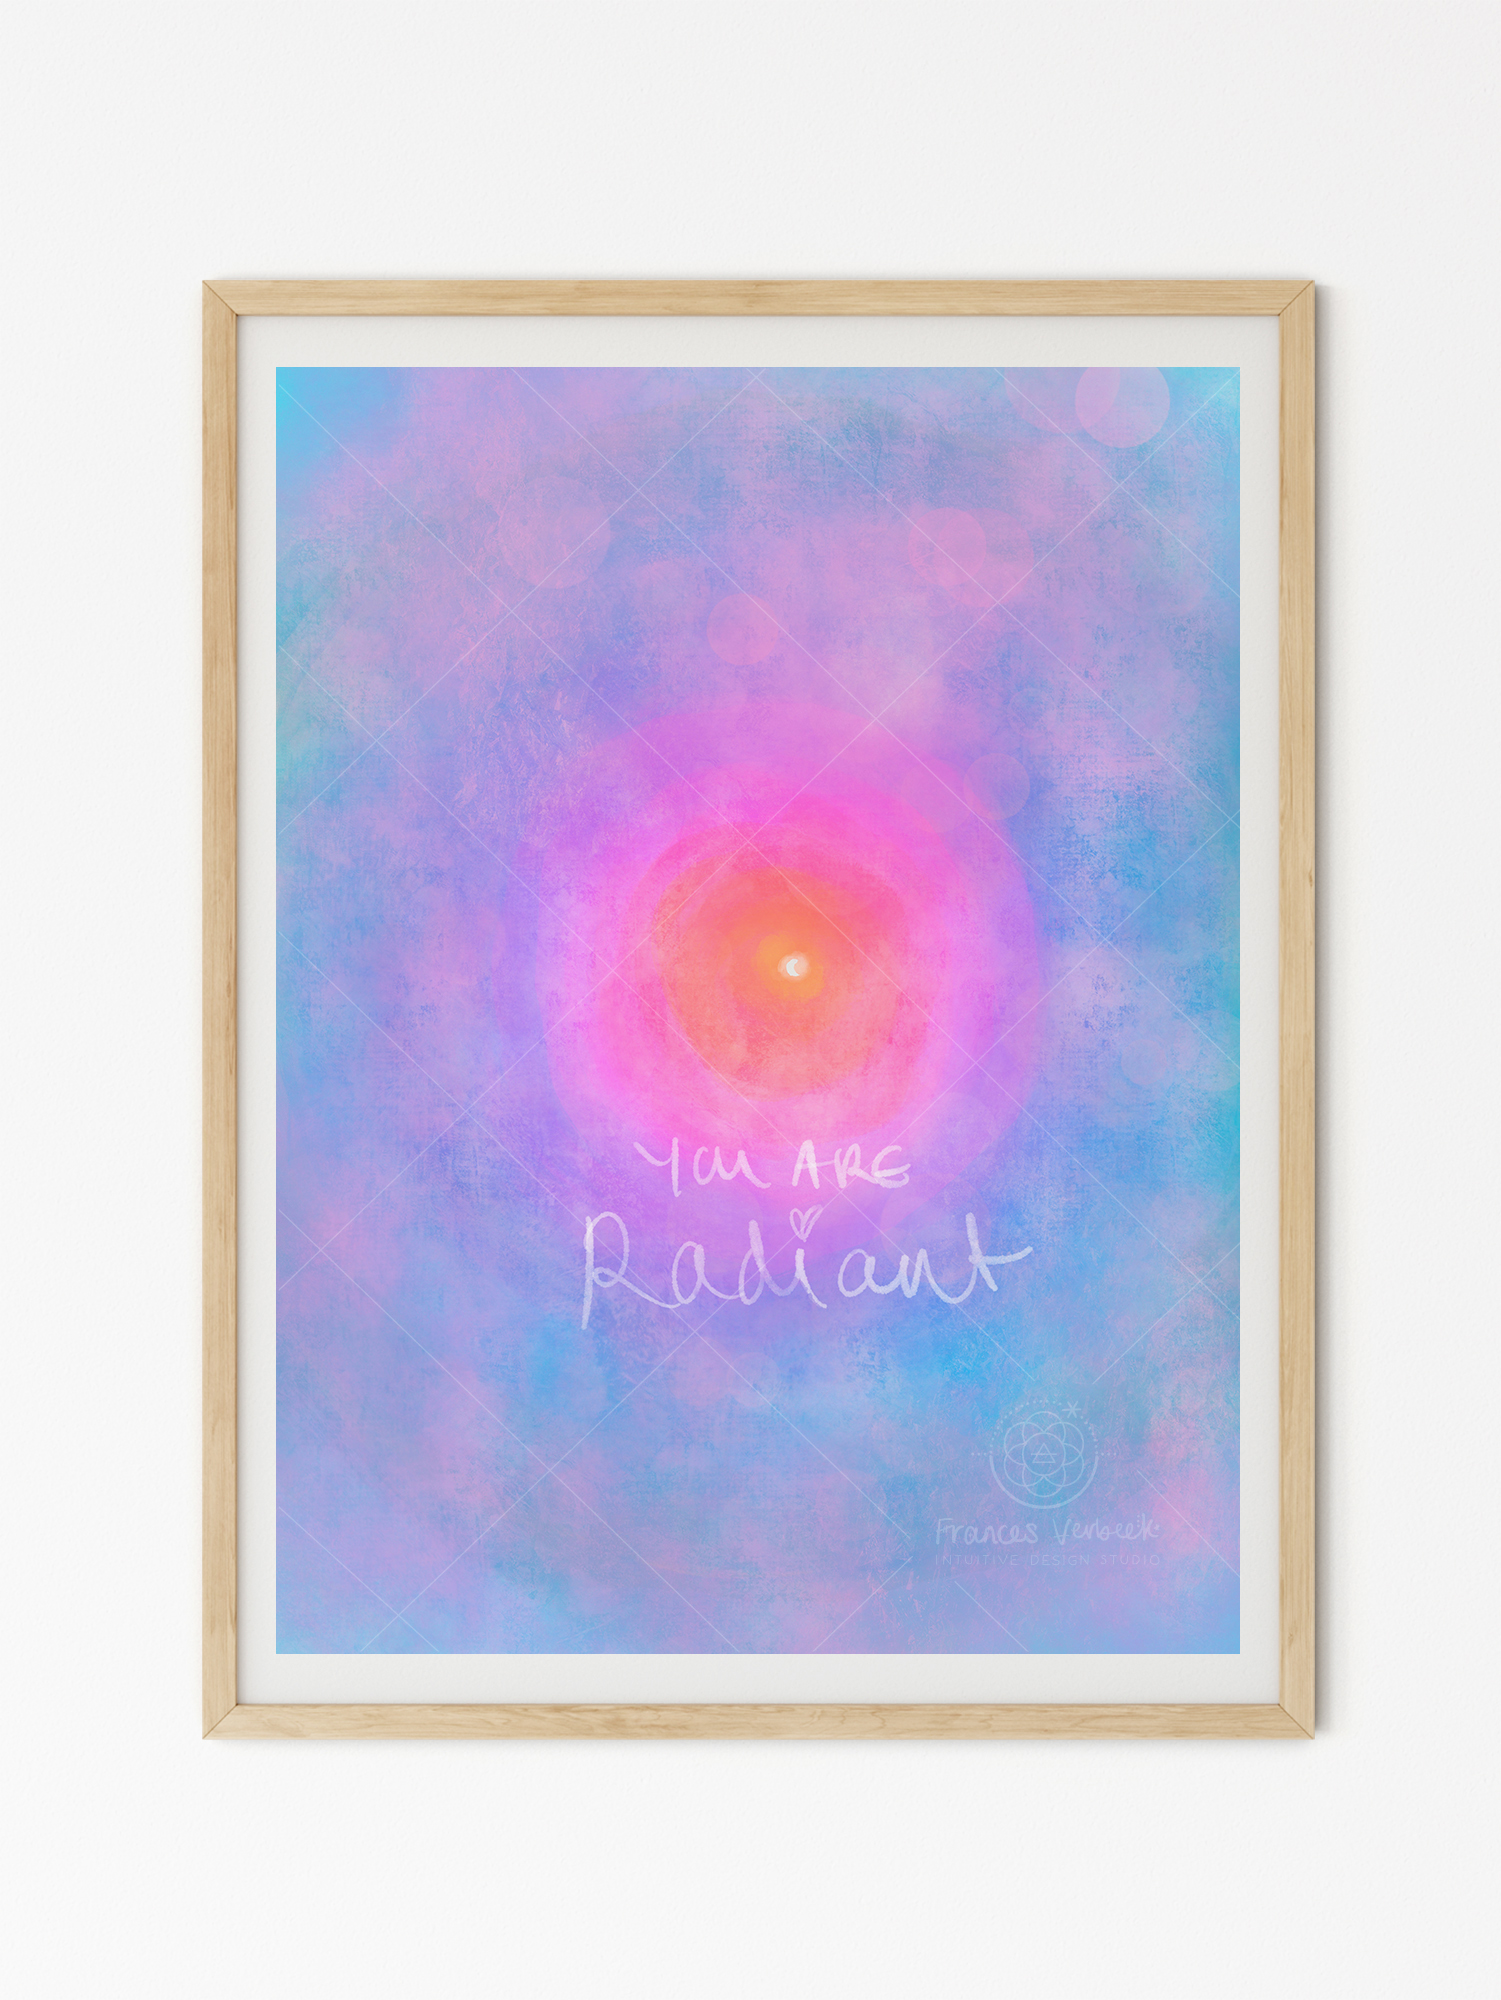 'Radiant' print by Frances Verbeek